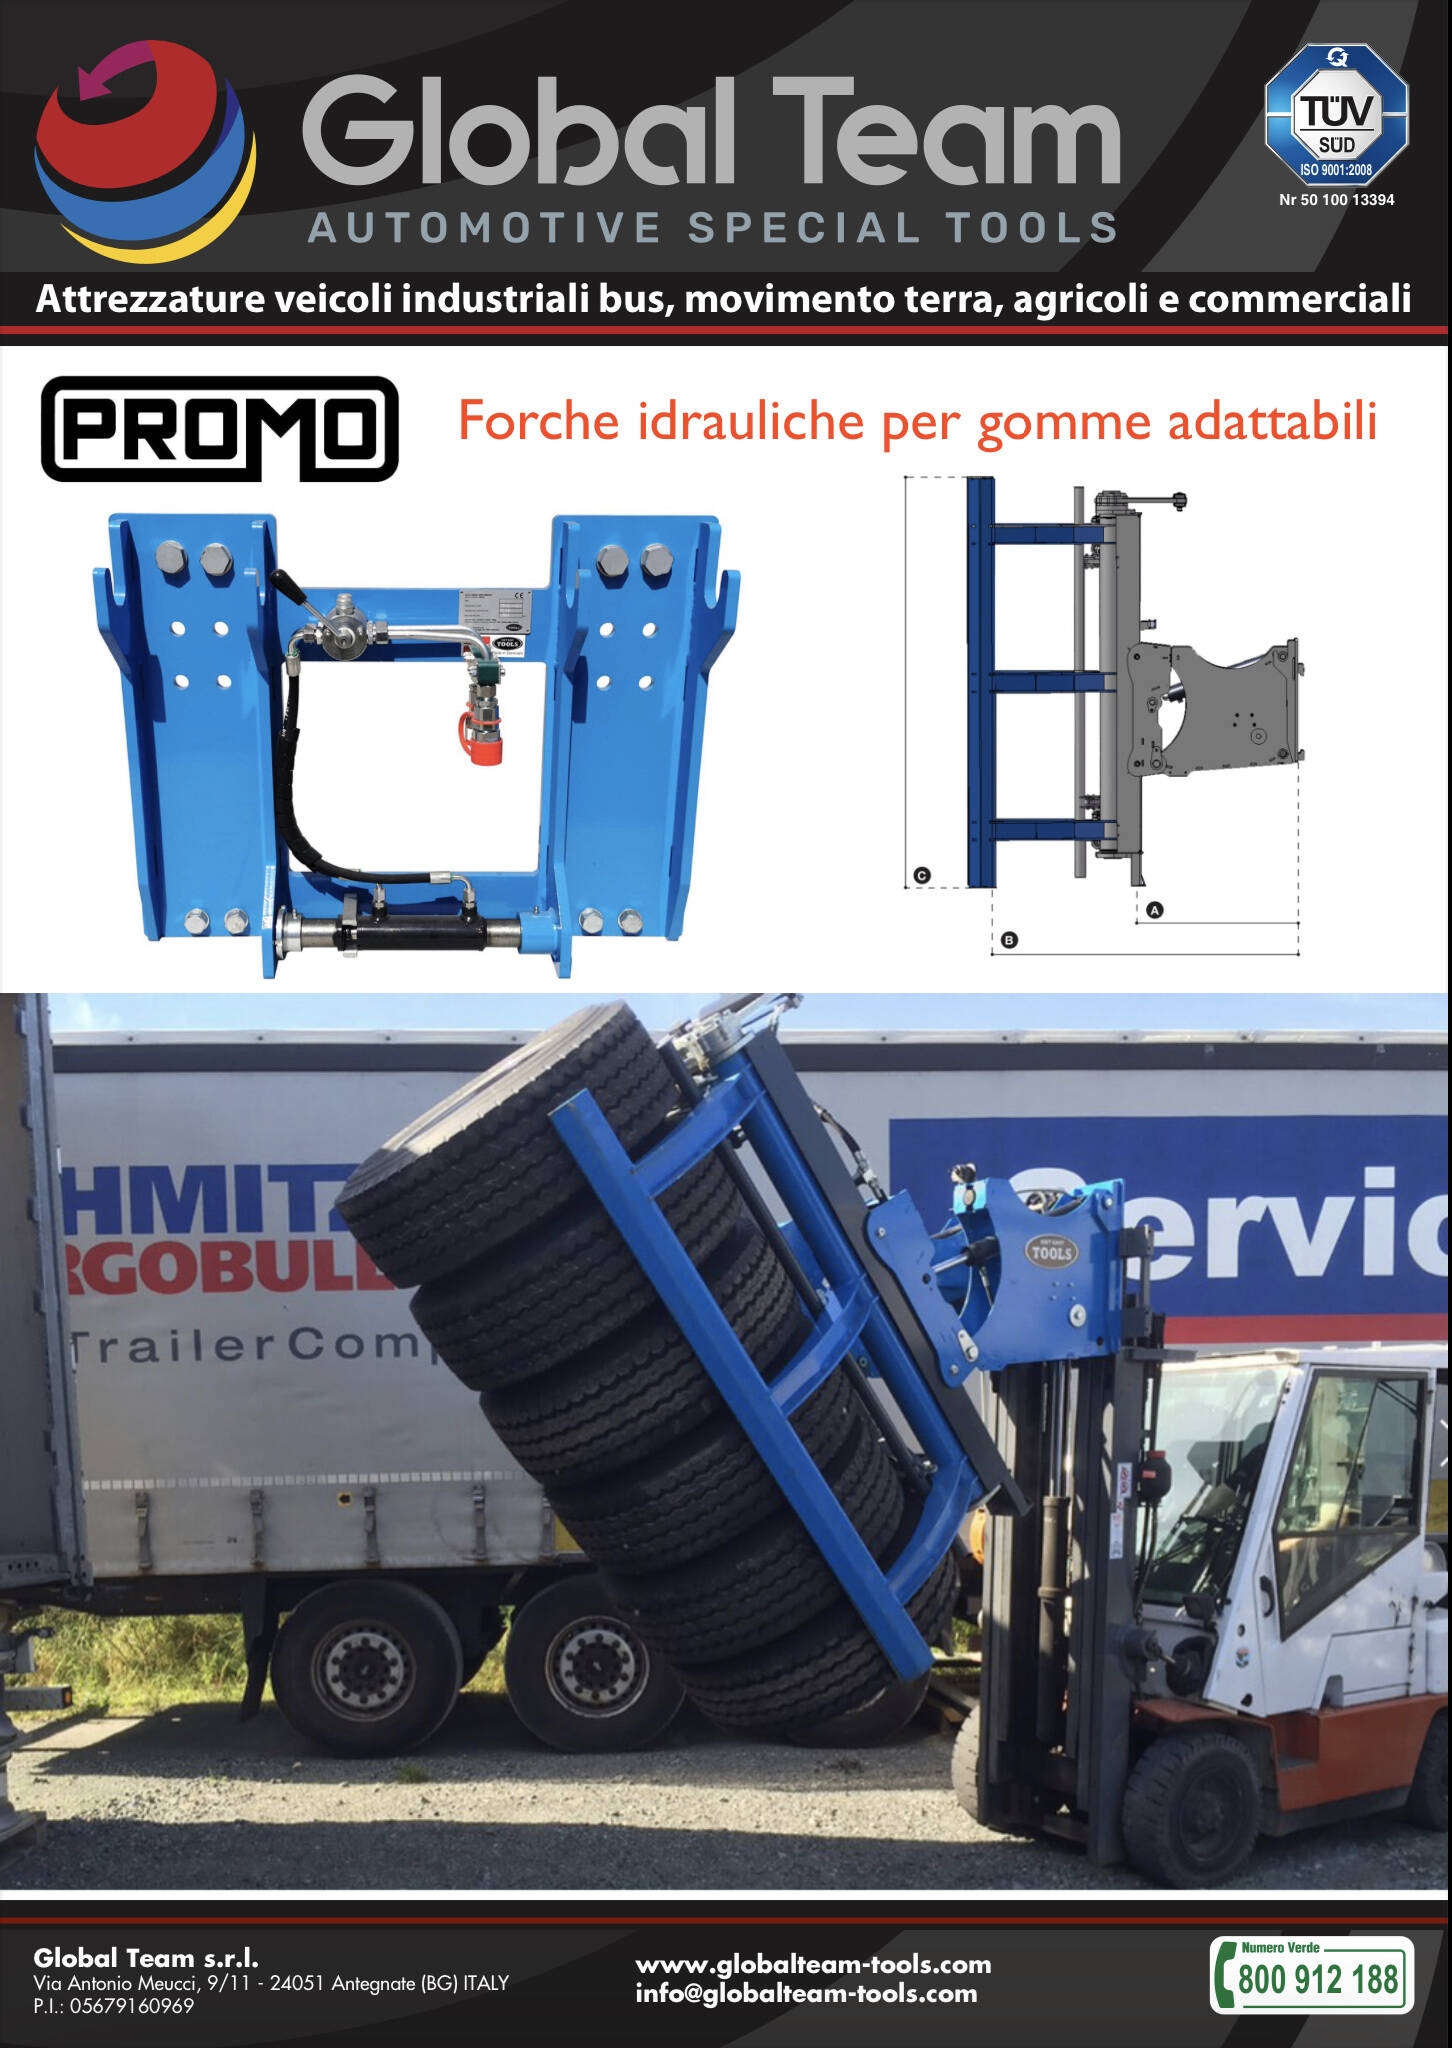 Promo lancio prodotto Pinza idraulica adattabile a carrello elevatore per spostamento pneumatici trucks 